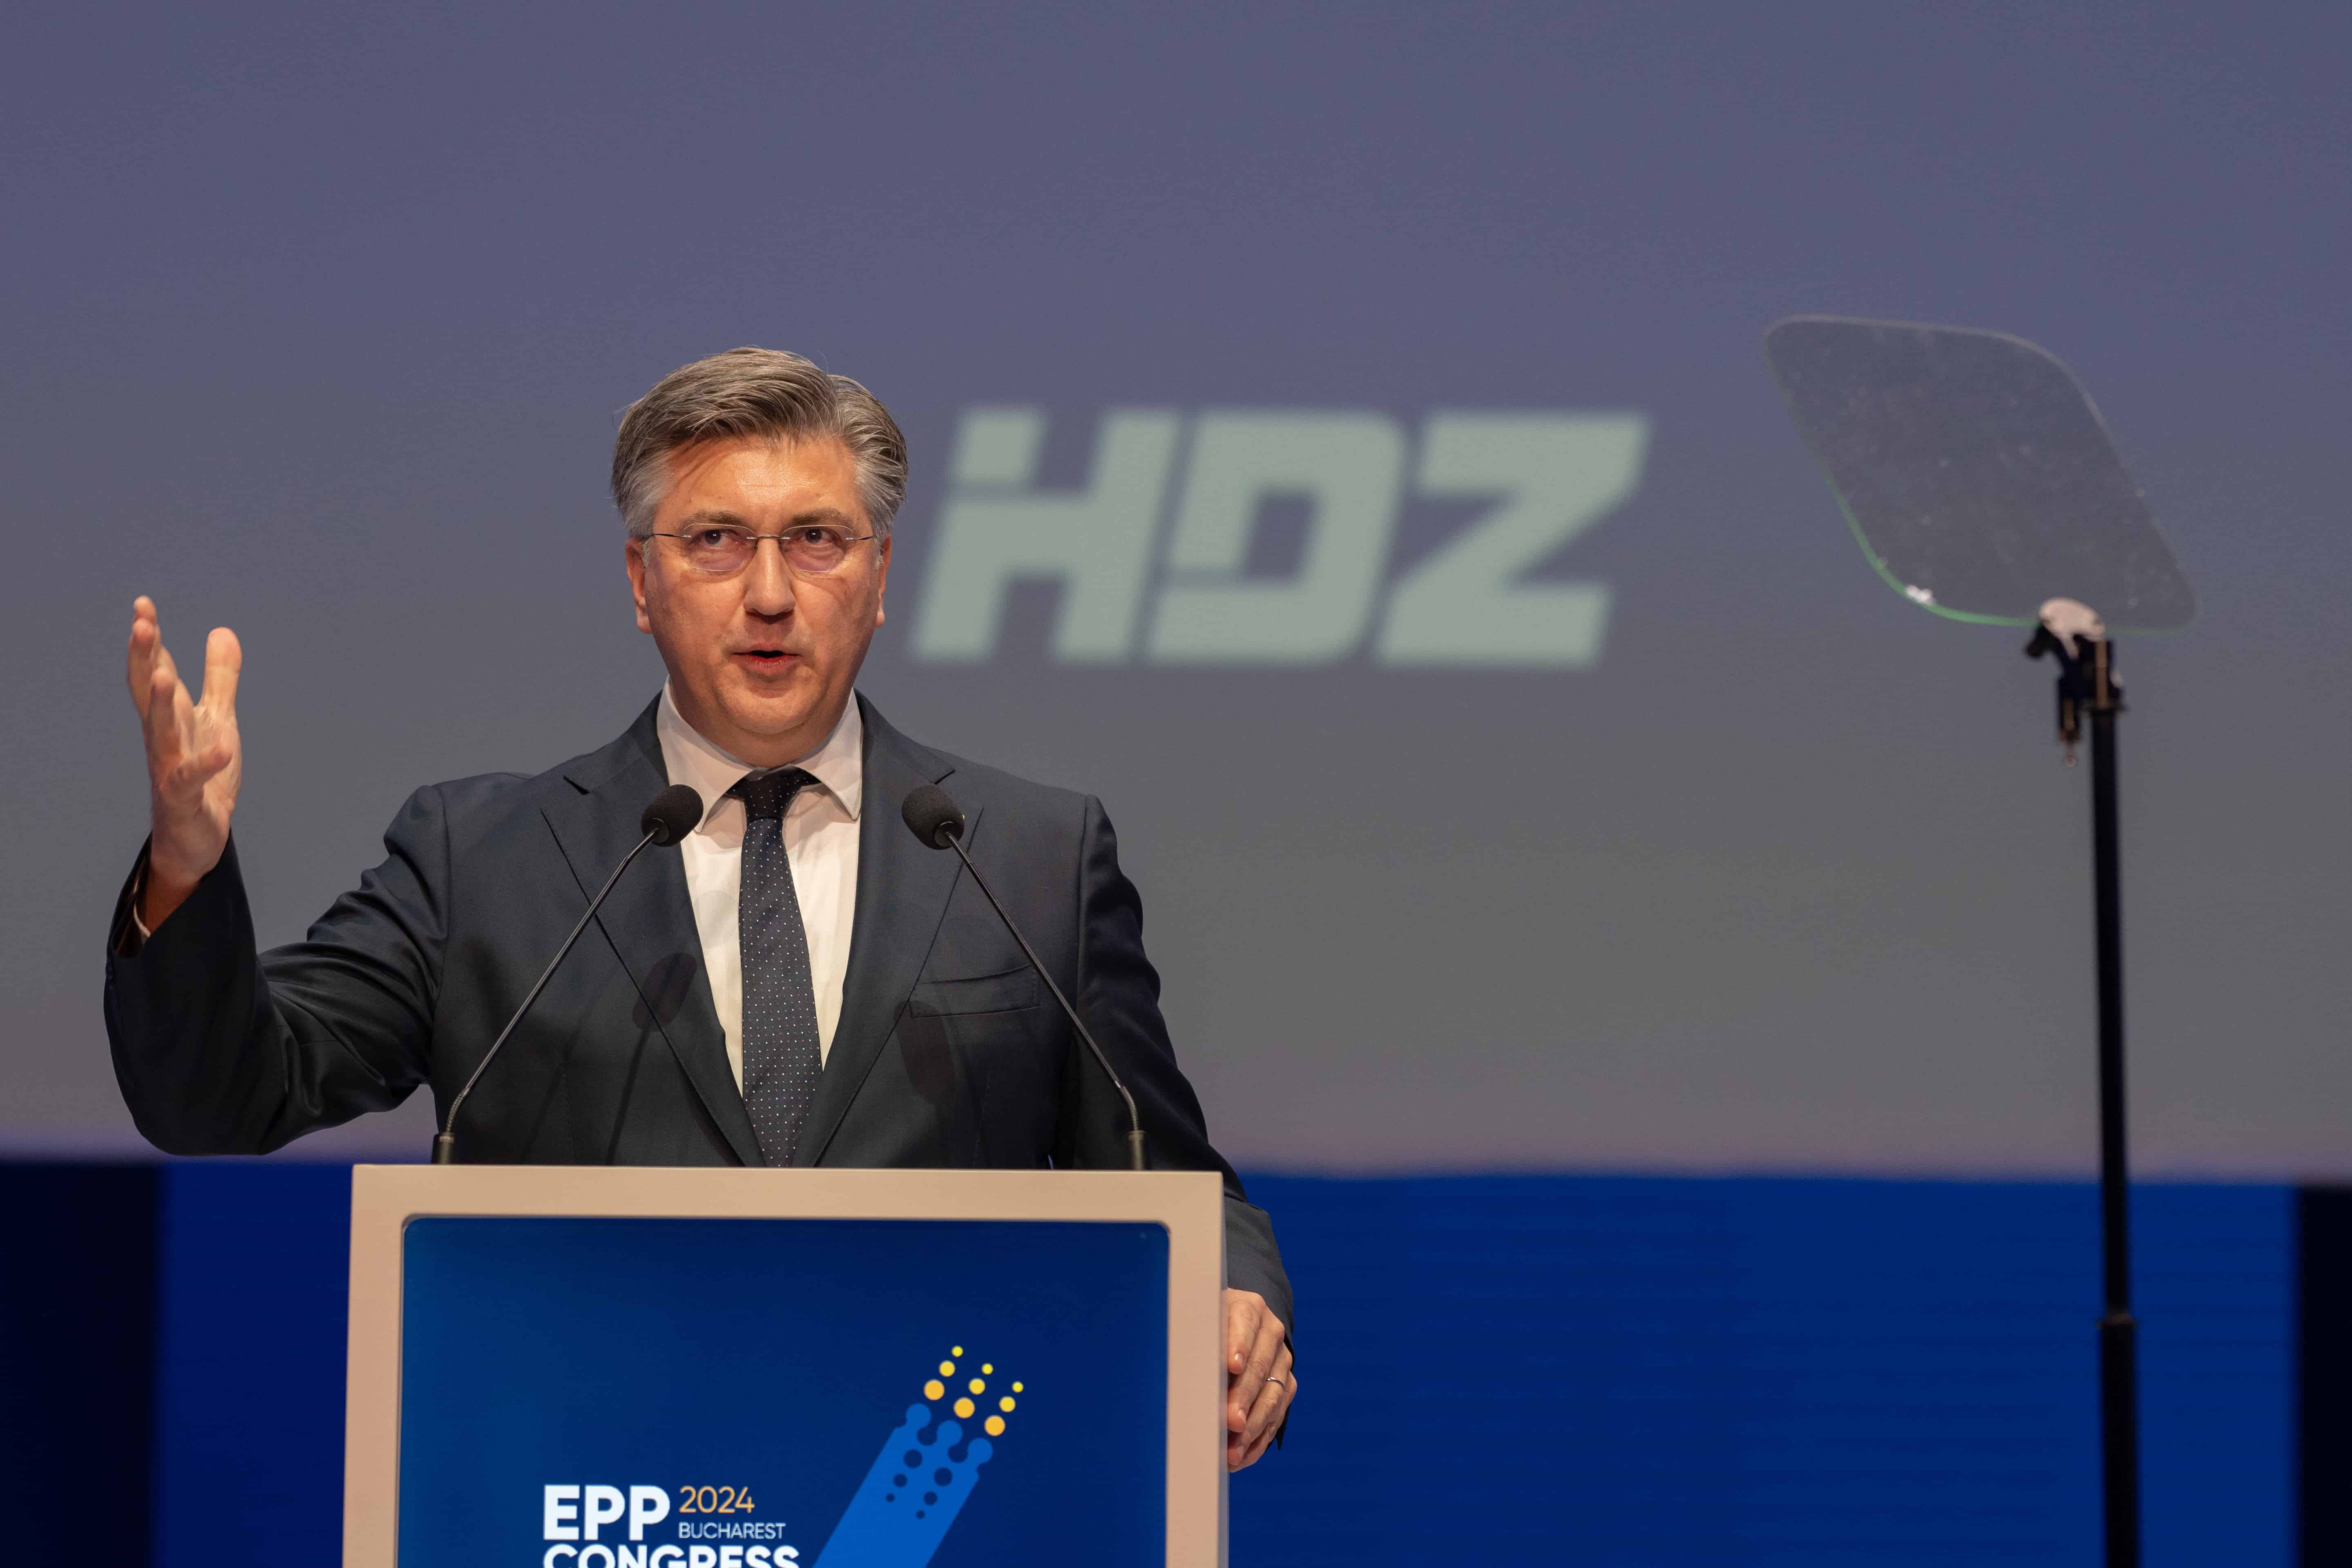 Croatia: HDZ Party Wins Most Seats, Not Majority